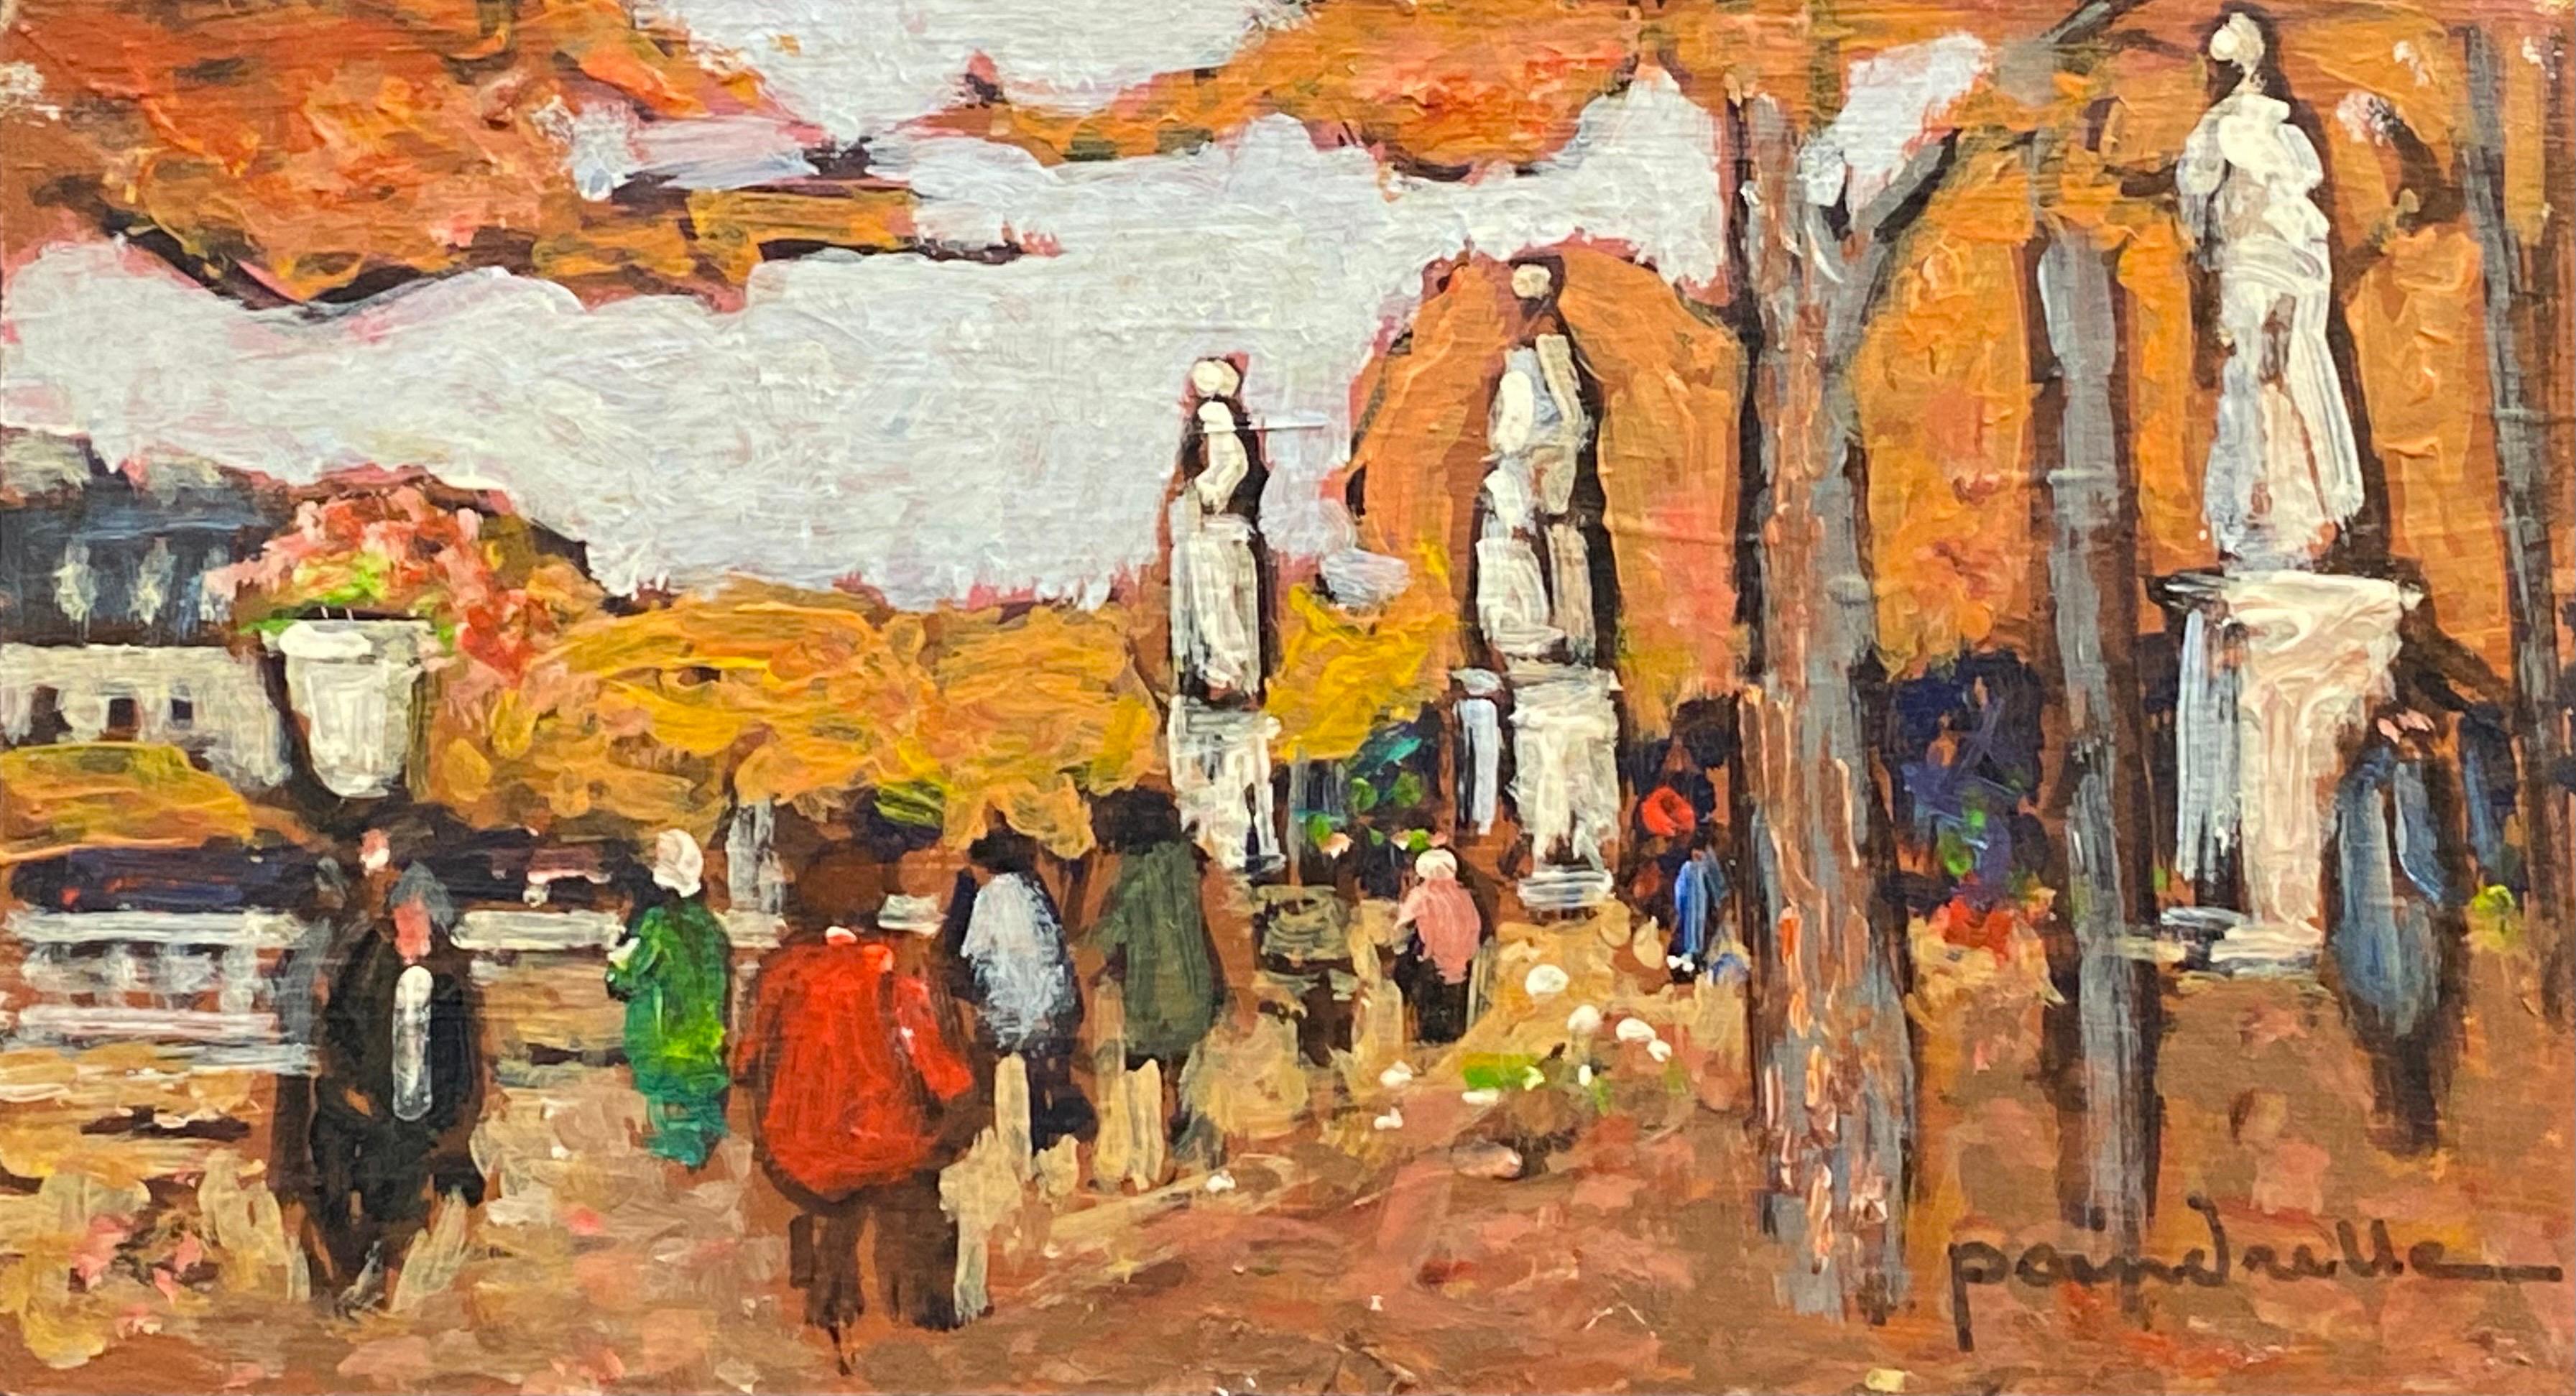 Landscape Painting Patrice Poindrelle - Peinture à l'huile impressionniste française - Park parisien en automne, signée 